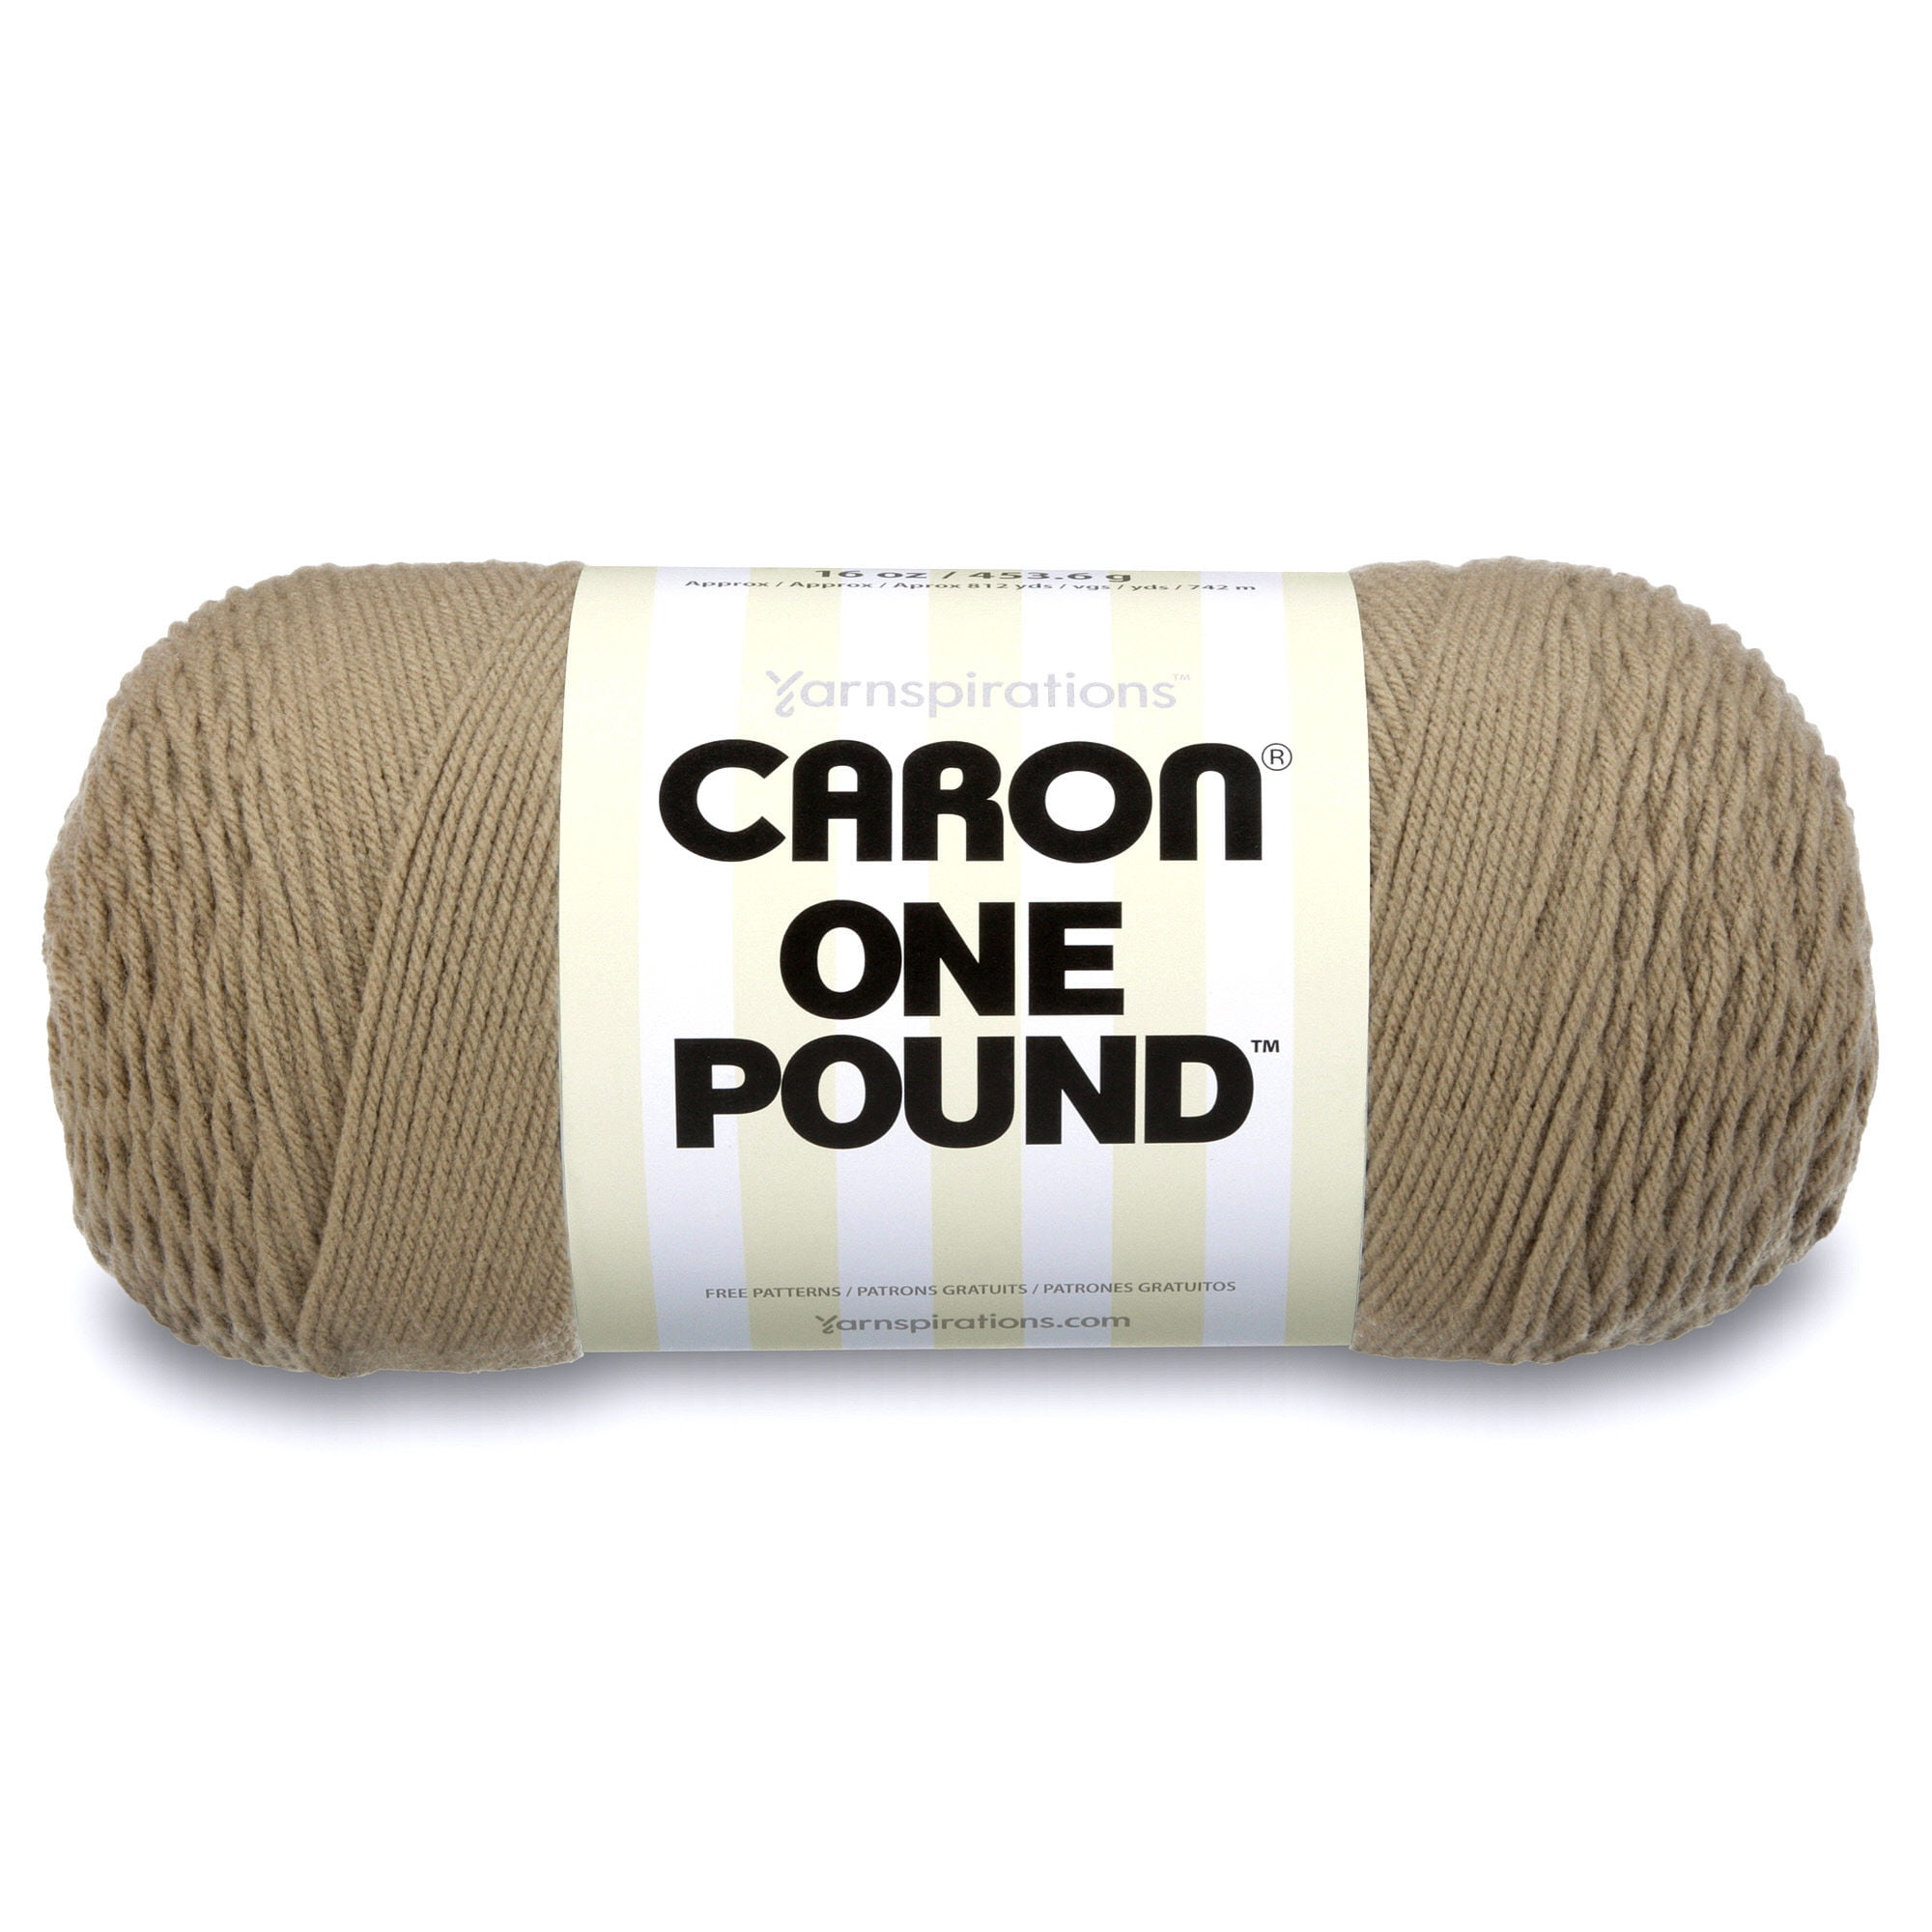 Caron One Pound Cape Cod Blue Yarn - 2 Pack of 454g/16oz - Acrylic - 4 Medium Worsted - 812 Yards - Knitting/Crochet